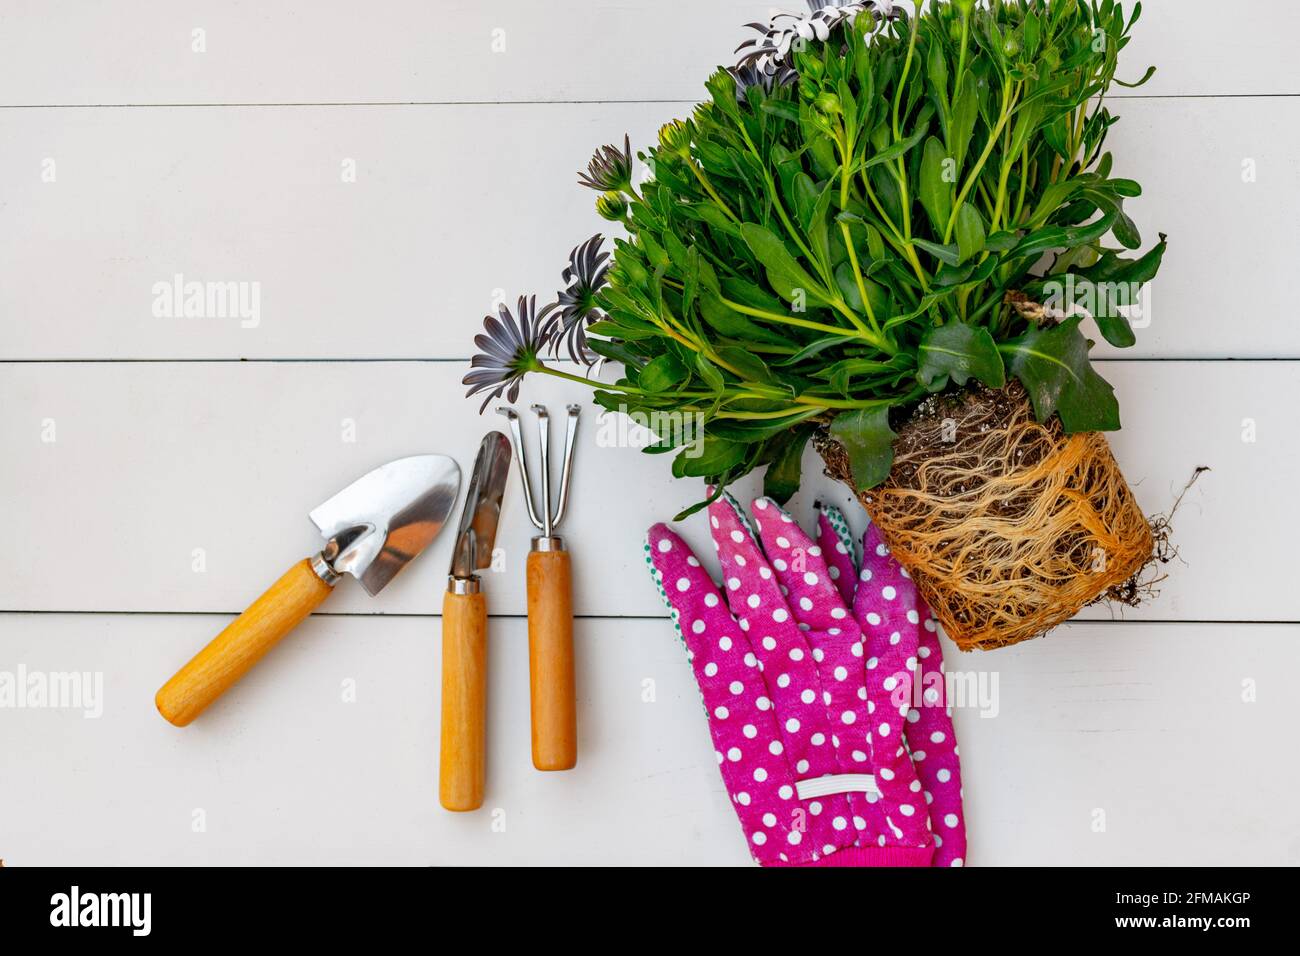 Outils de jardinage et de jardinage rose gant et Marguerite plante avec les racines exposées sur un fond de blanc rustiques panneaux. Vue de dessus. Banque D'Images